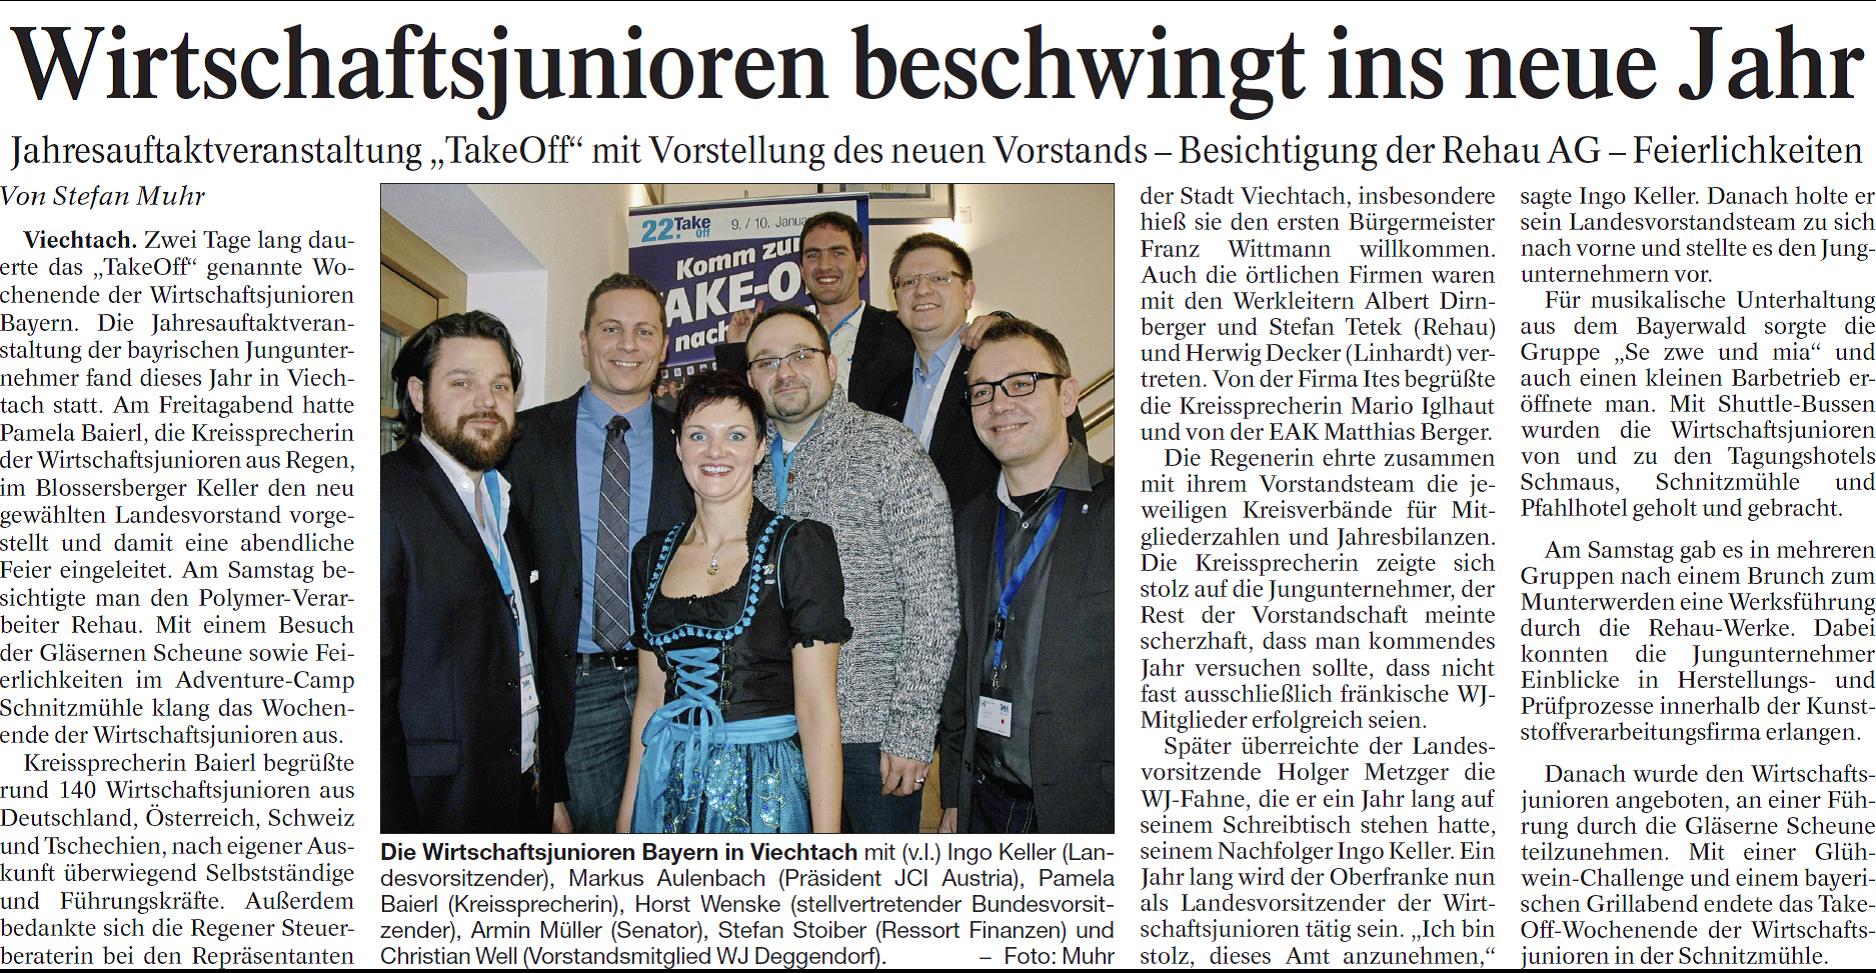 Jahresauftakt der Wirtschaftsjunioren in Viechtach - Die Passauer Neue Presse berichtet am 12.1.2015